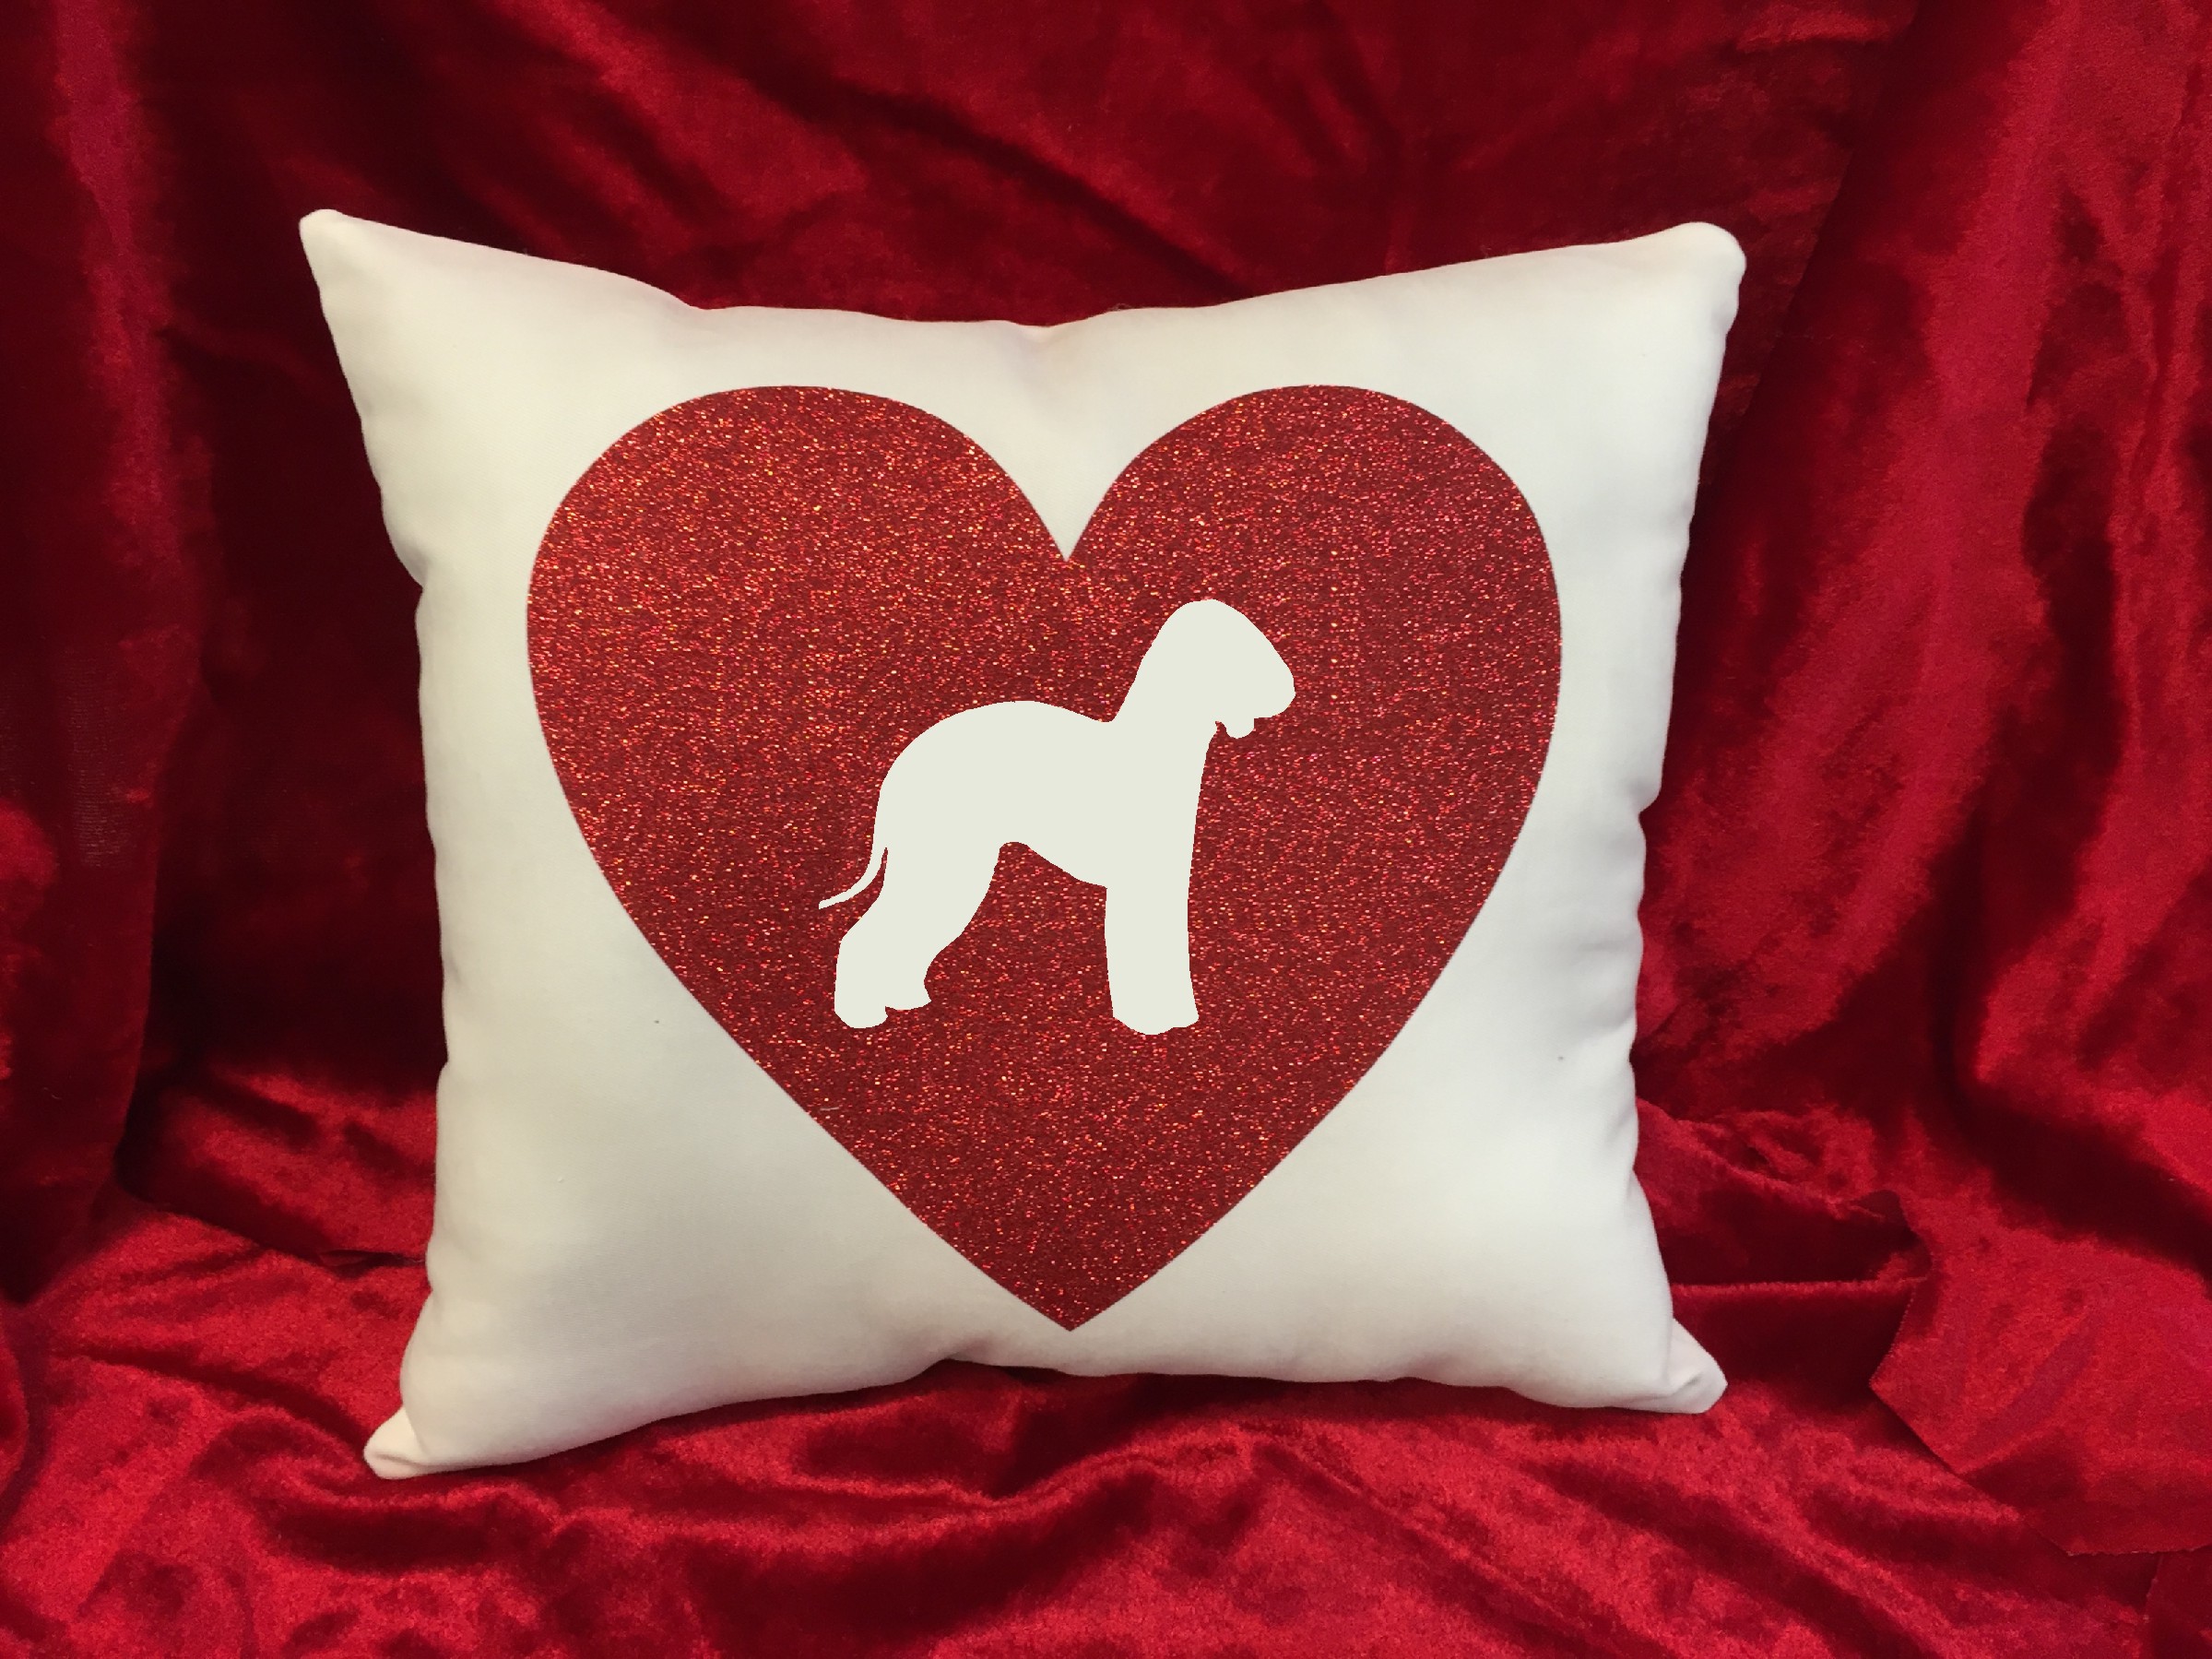 Dogs - Throw Pillow - Bedlington Terrier